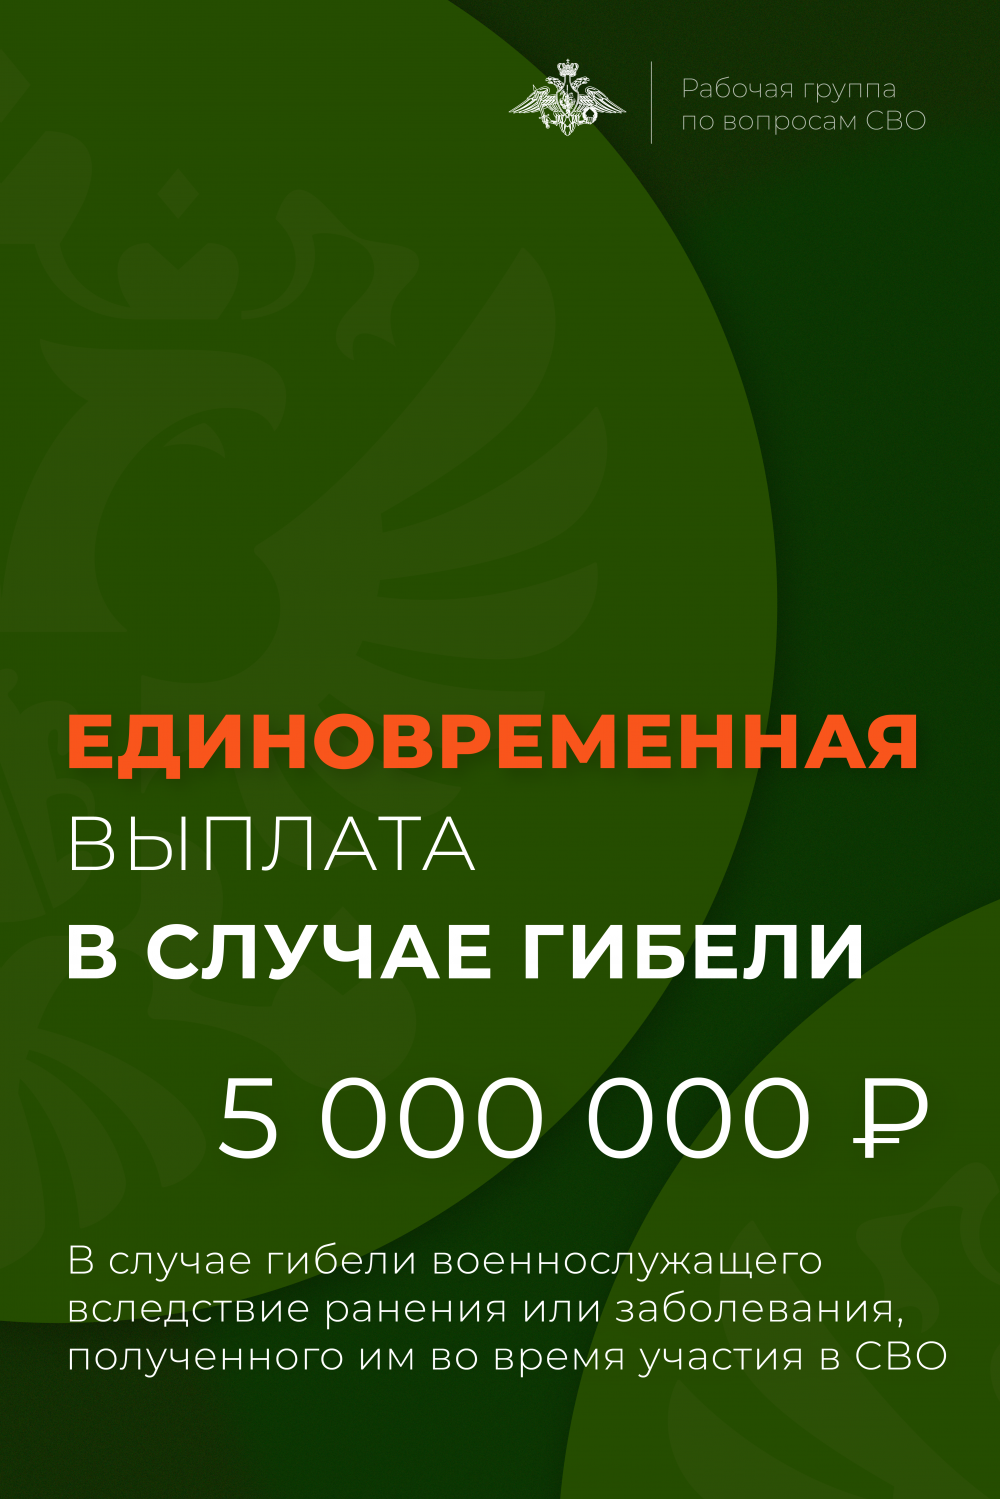 Единовременная выплата в размере 5 миллионов рублей положена семьям погибших участников СВО